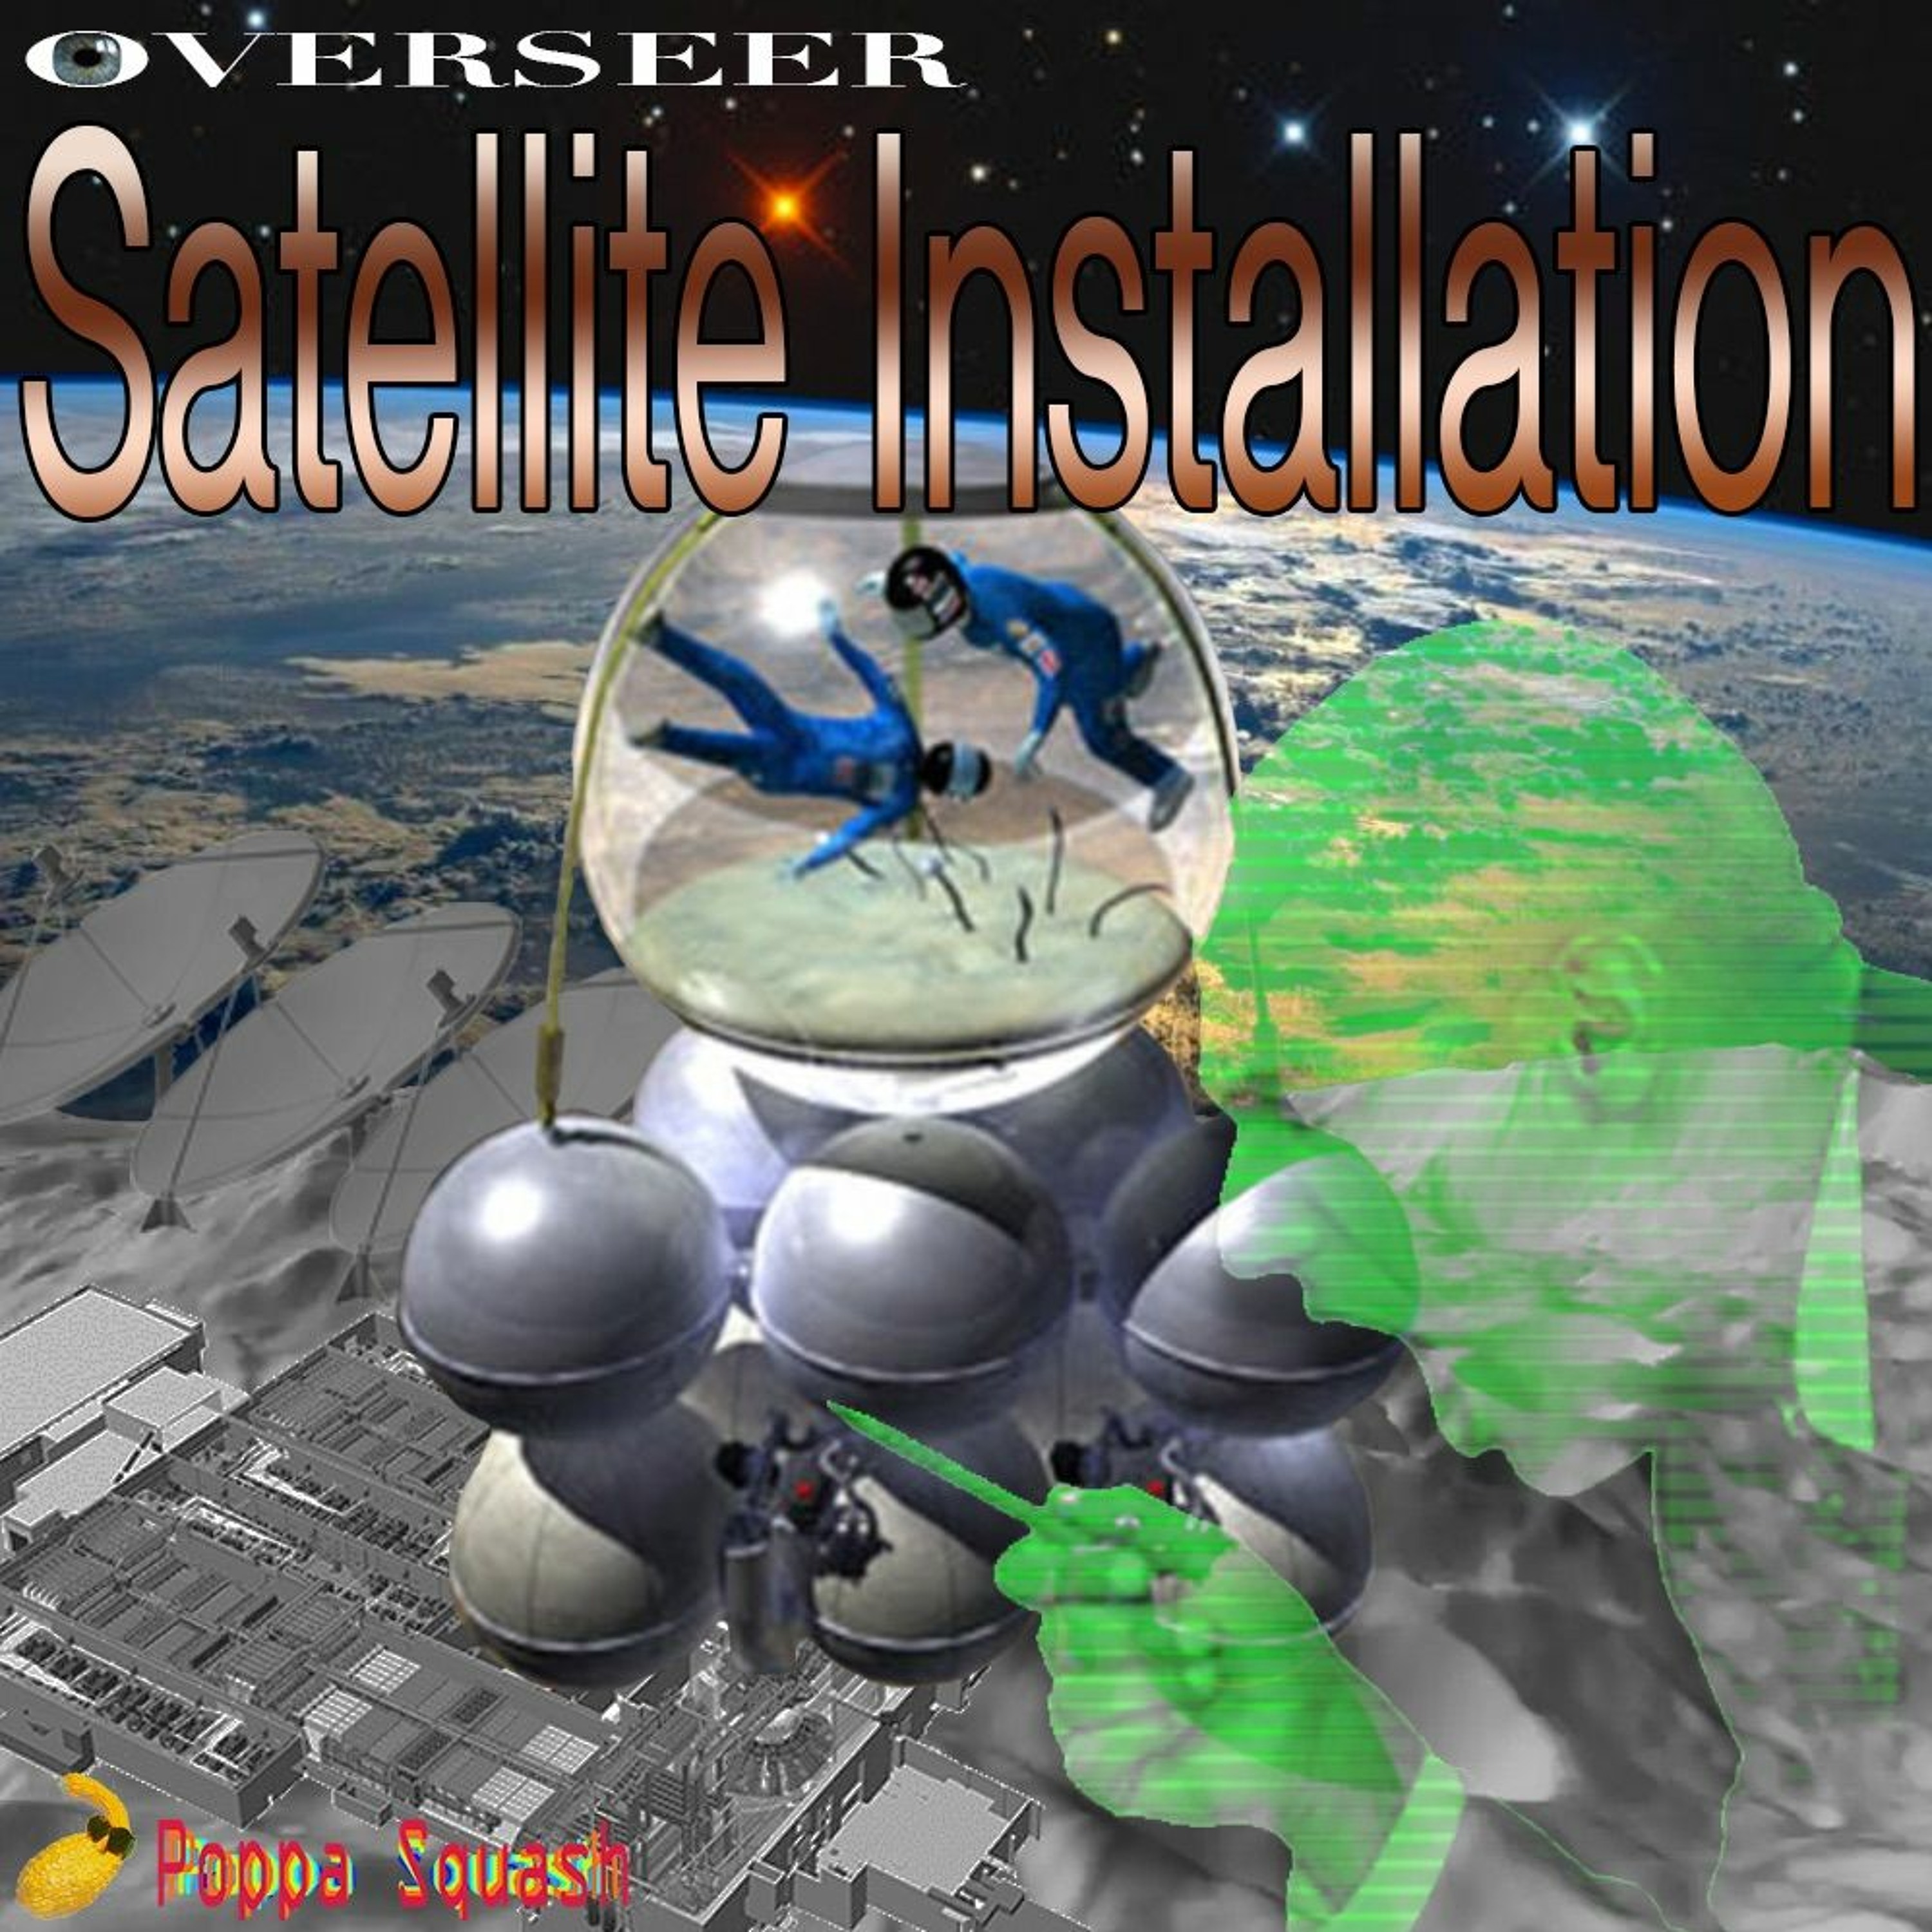 Overseer Satellite Installation